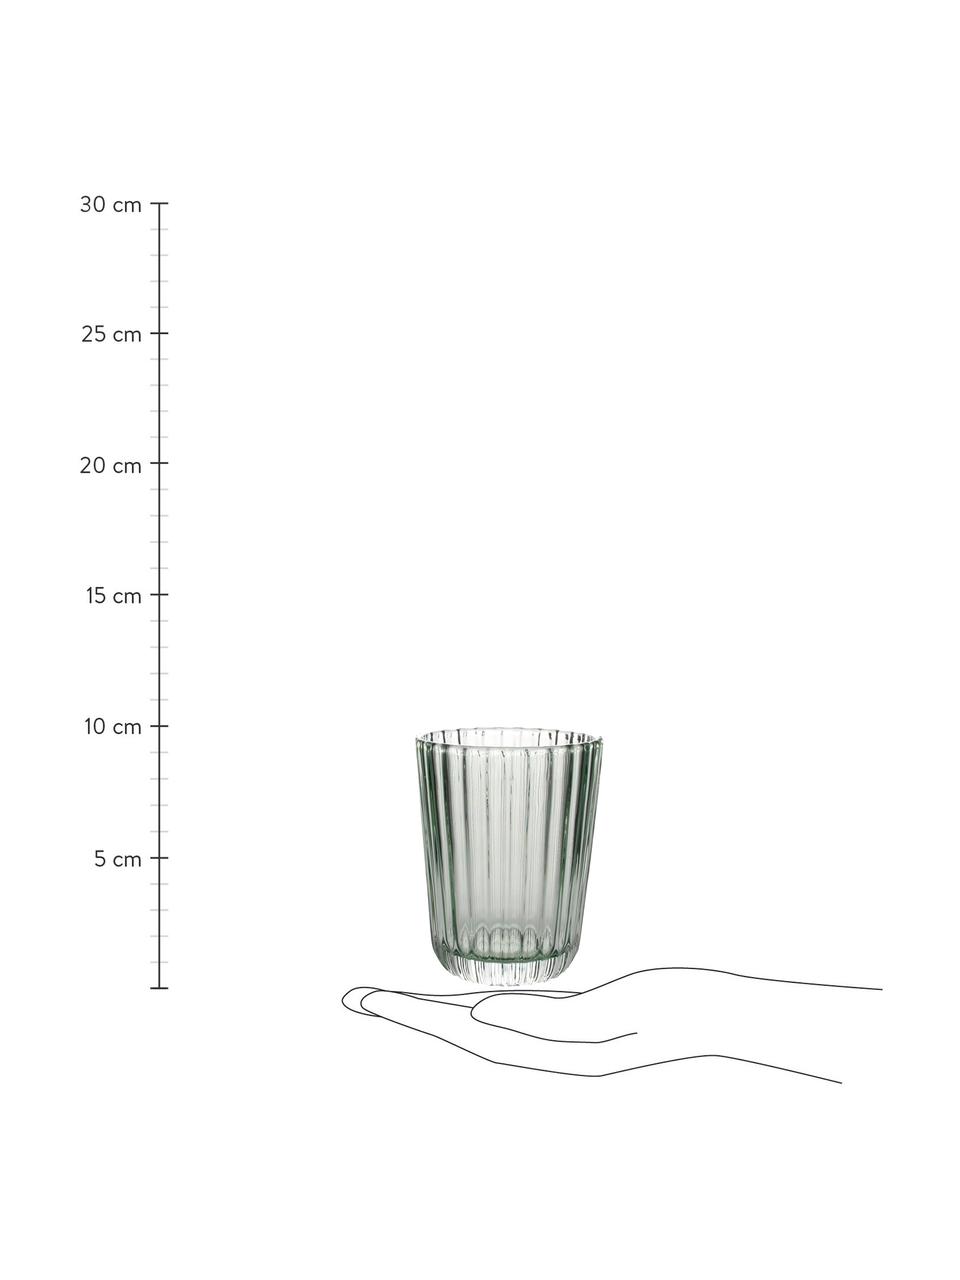 Wassergläser Blossom mit Rillenrelief, 4 Stück, Glas, Grün, Ø 8 x H 10 cm, 260 ml